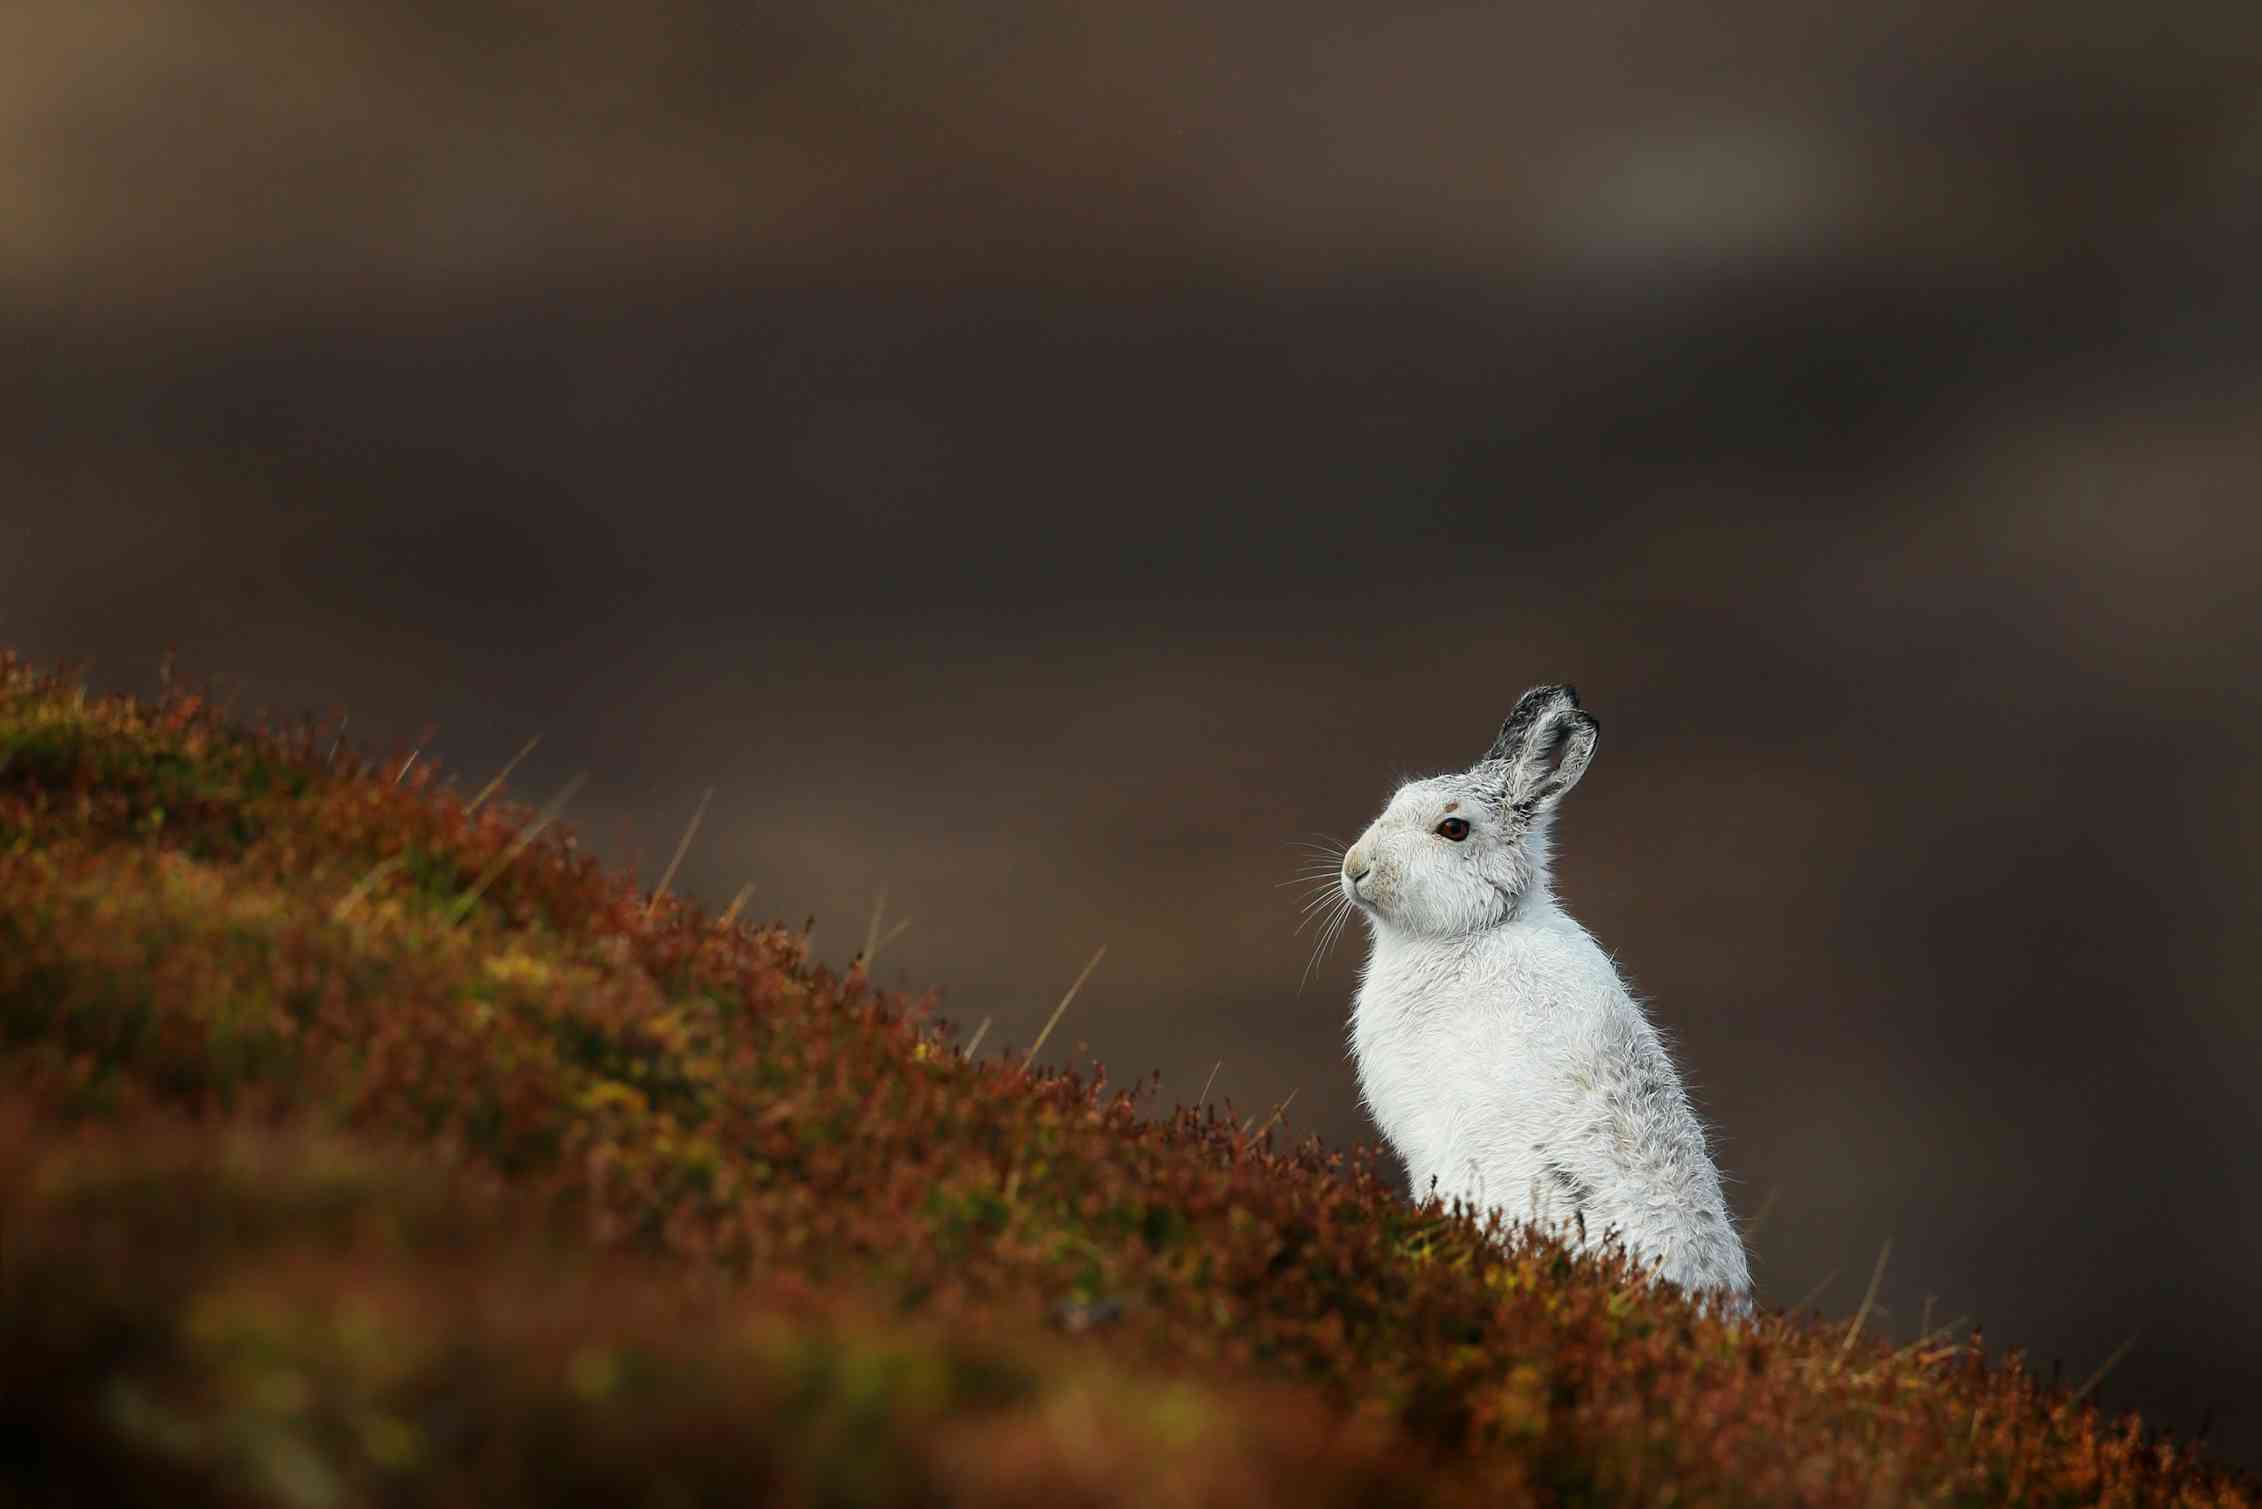 White rabbit, brown background